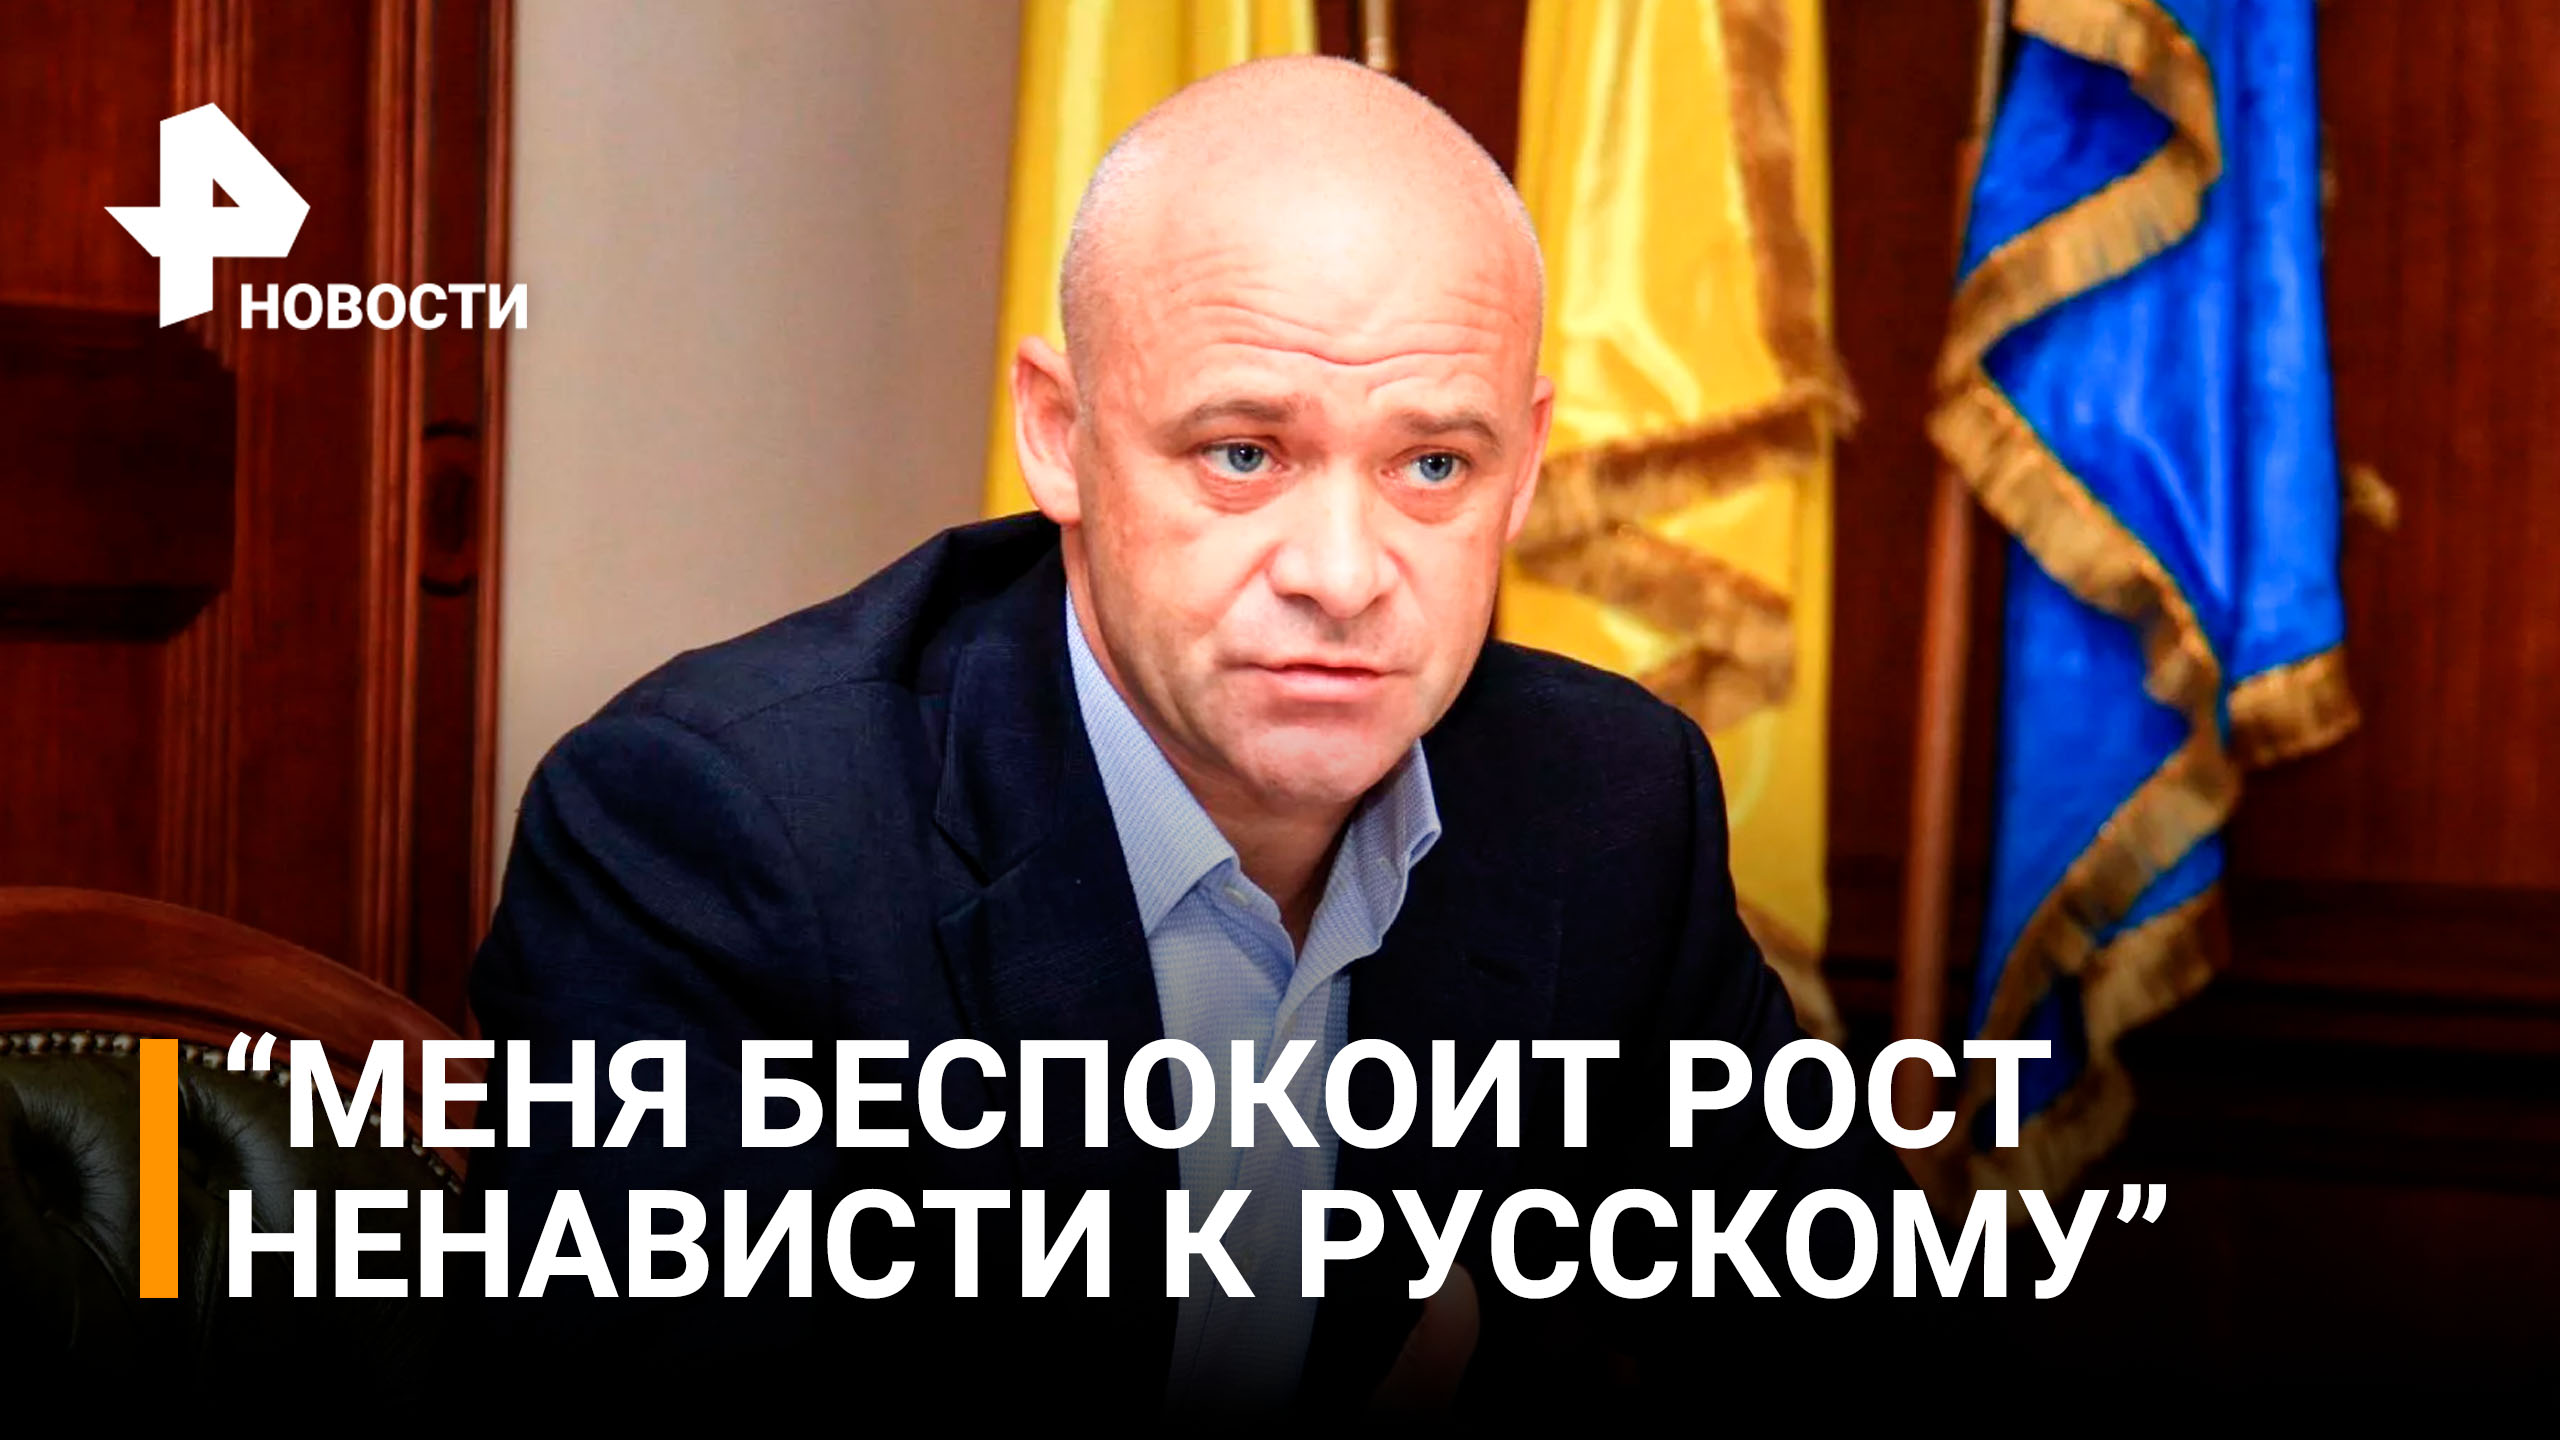 Мэр Одессы Труханов заявил, что обеспокоен ростом русофобии на Украине / РЕН Новости